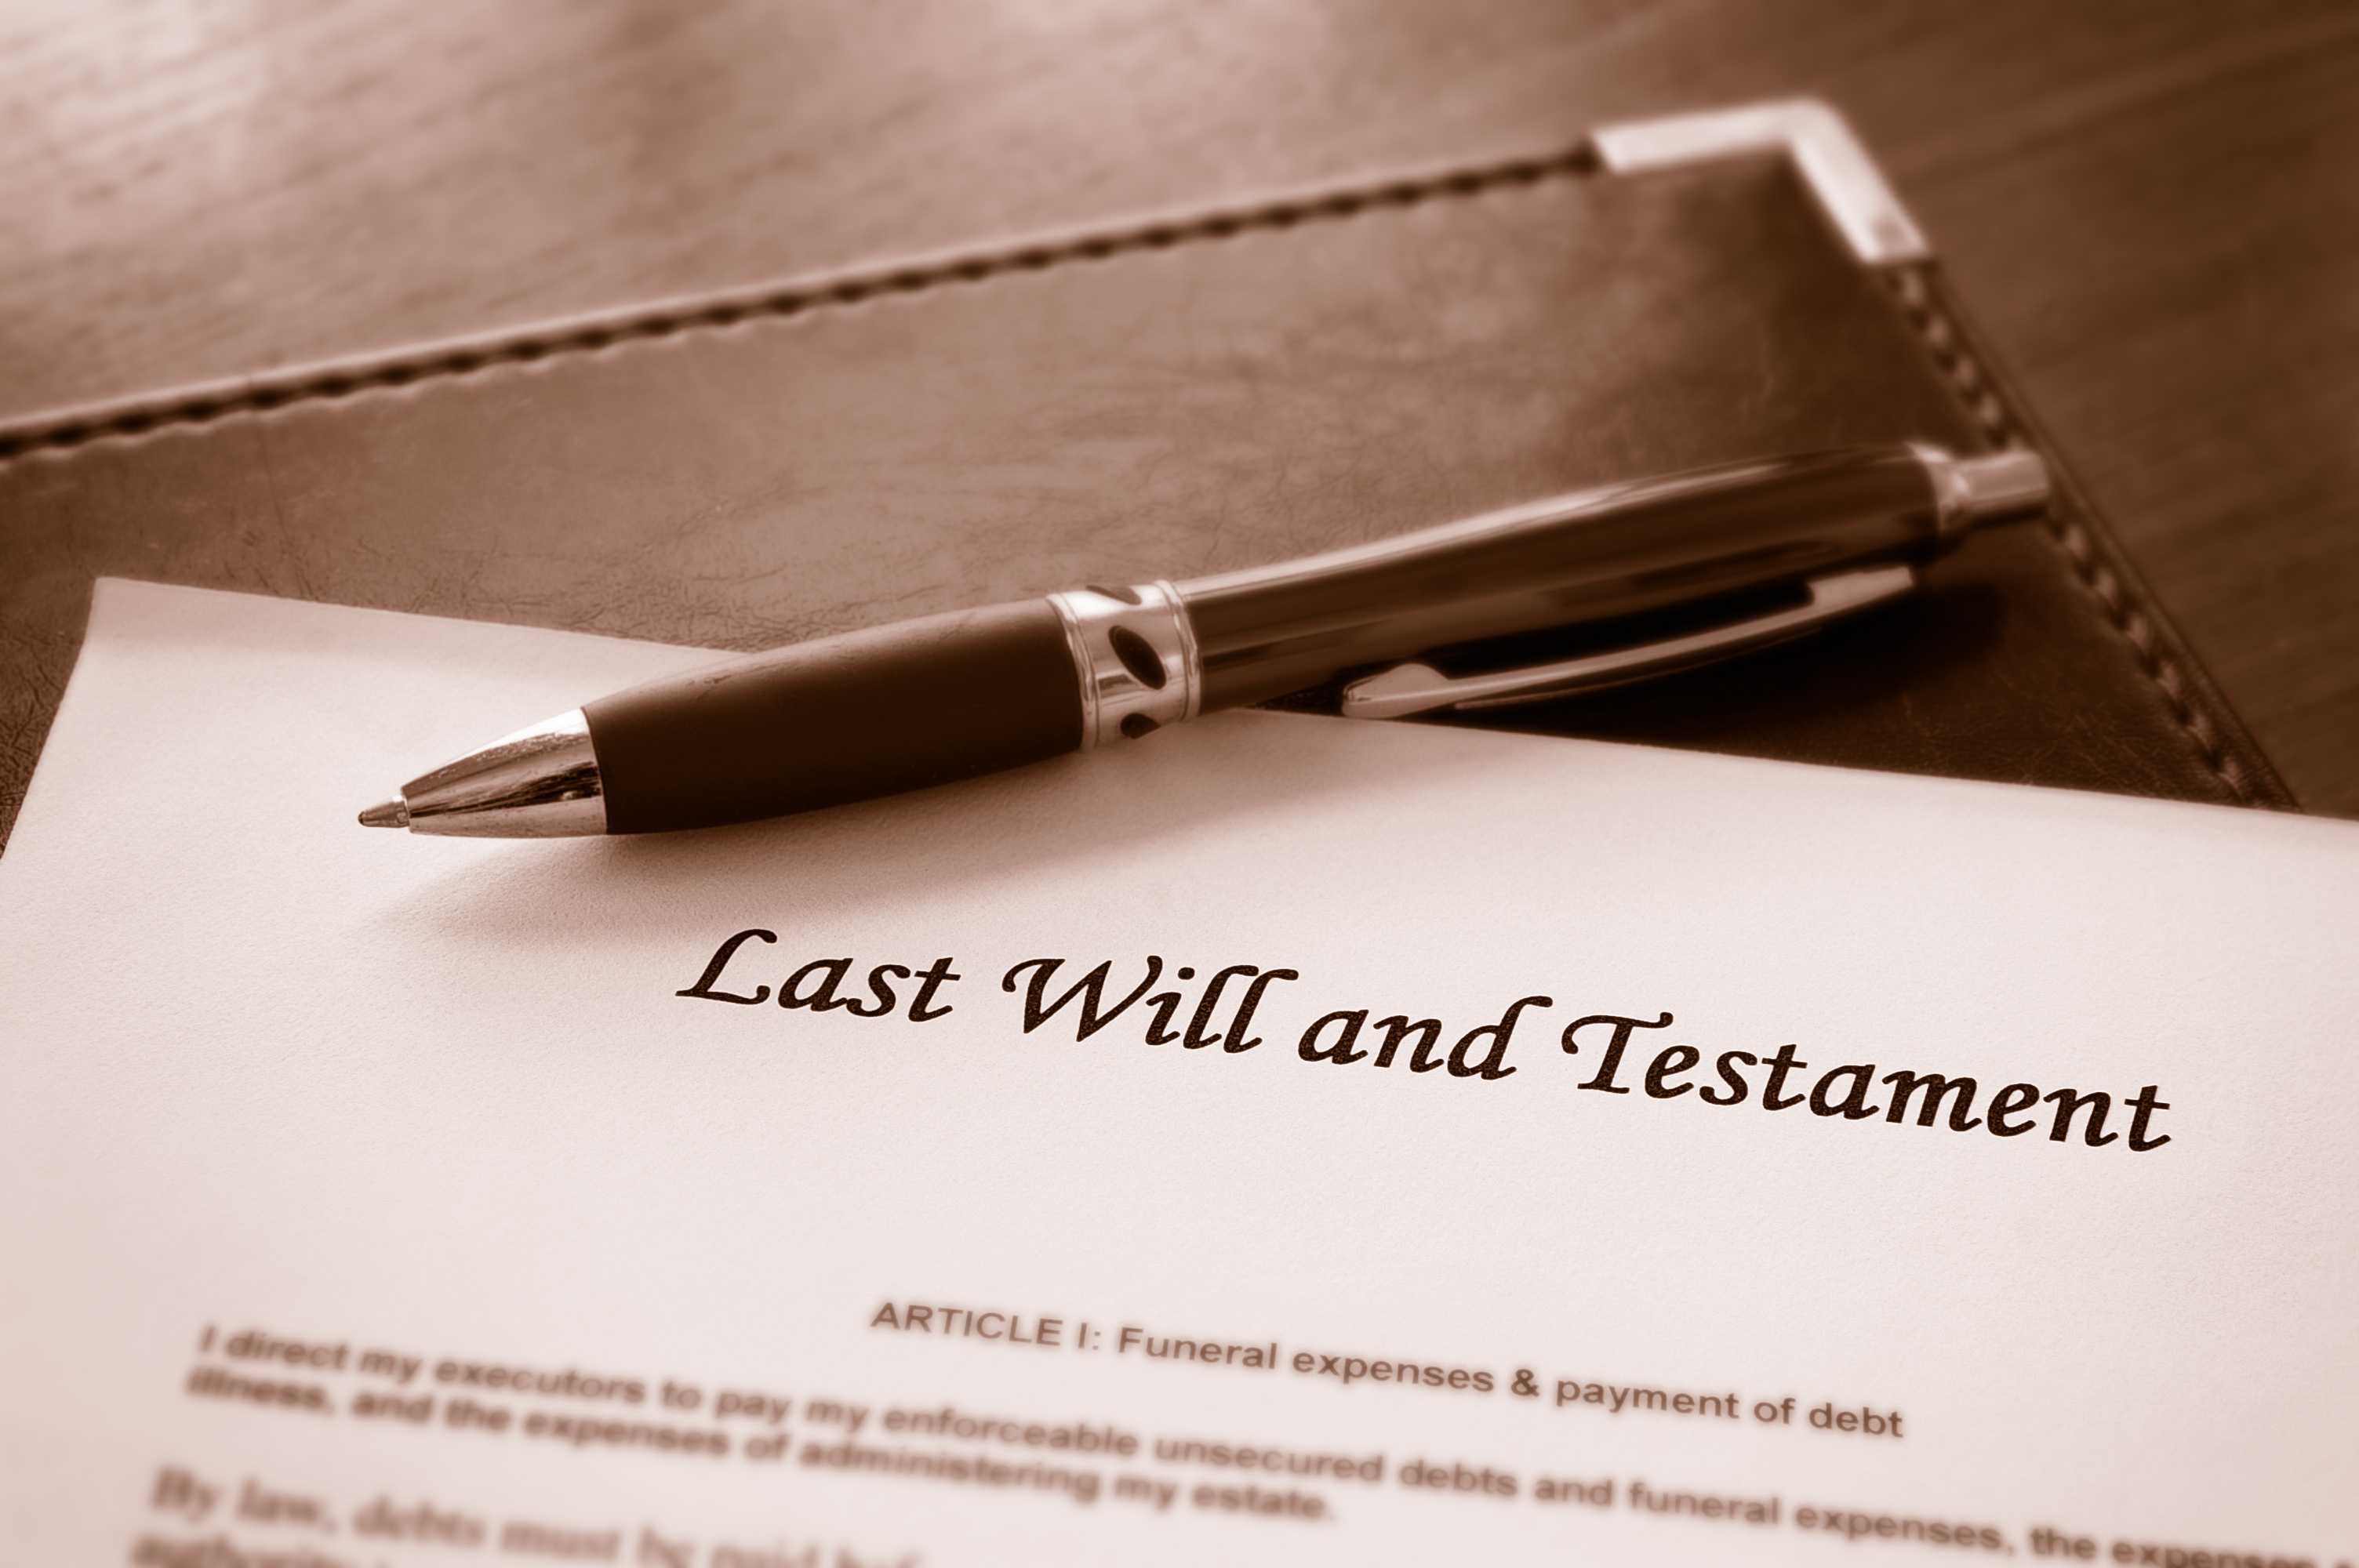 Un document contenant les dernières volontés de quelqu'un par écrit | Source : Shutterstock